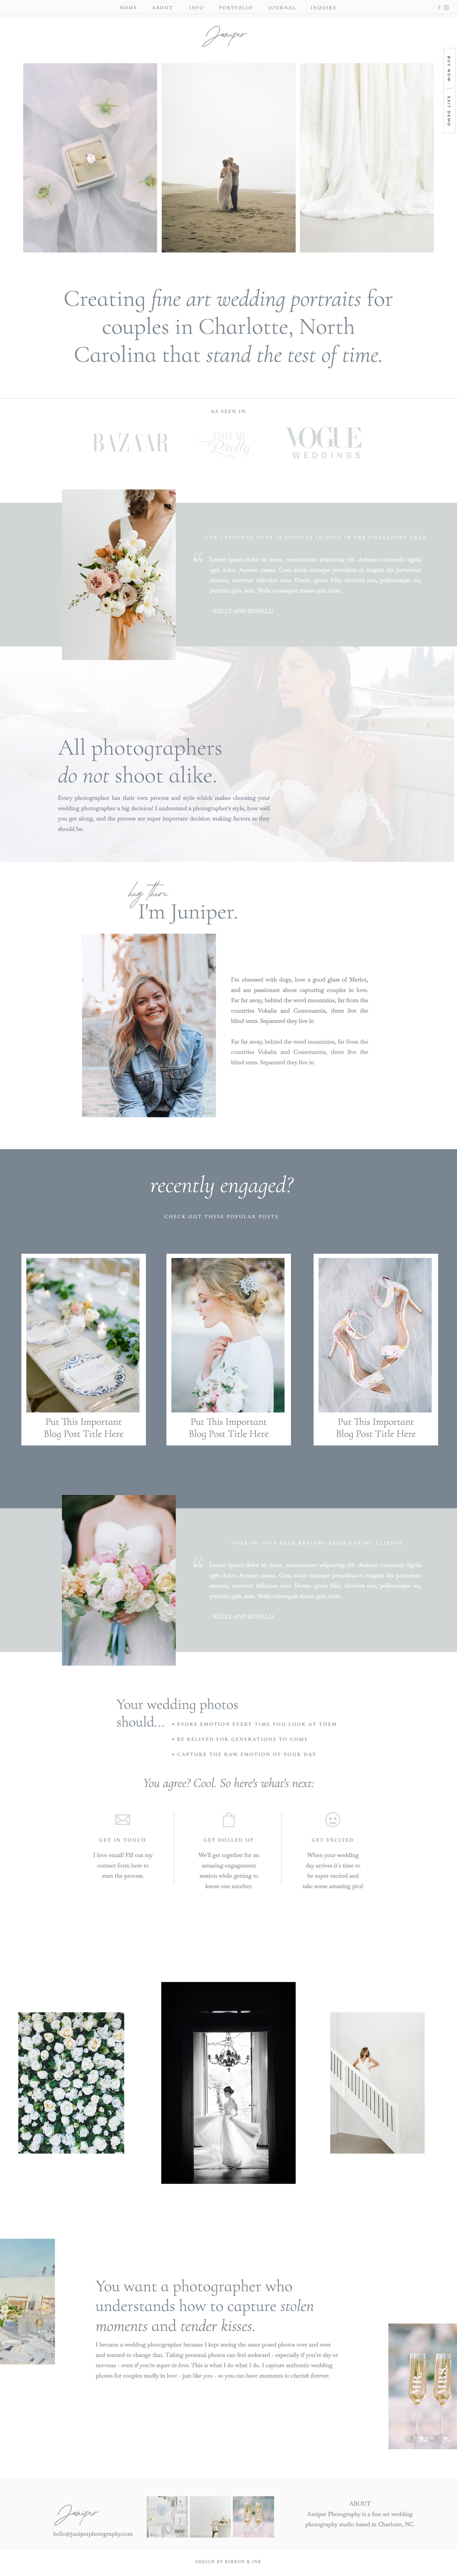 showit website template  / fine art website / showit design / showit website for wedding professionals